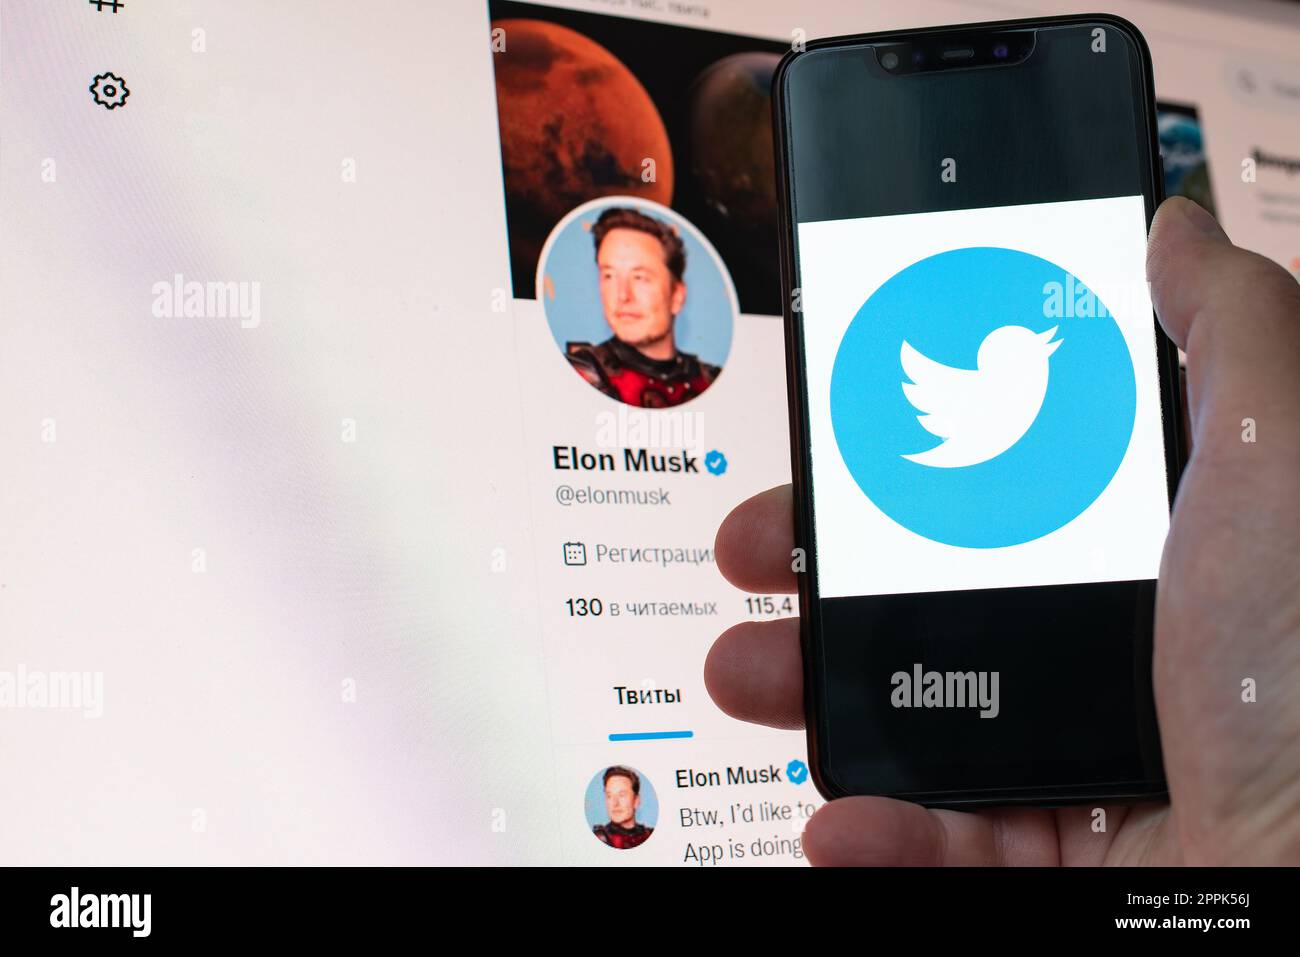 Kiev, Ucraina - 14 novembre 2022: Profilo Twitter ufficiale di Elon Musk sul monitor e logo dei social media visualizzato in primo piano su uno smartphone. Elon Musk raggiunge un accordo per acquisire Twitter. Foto Stock